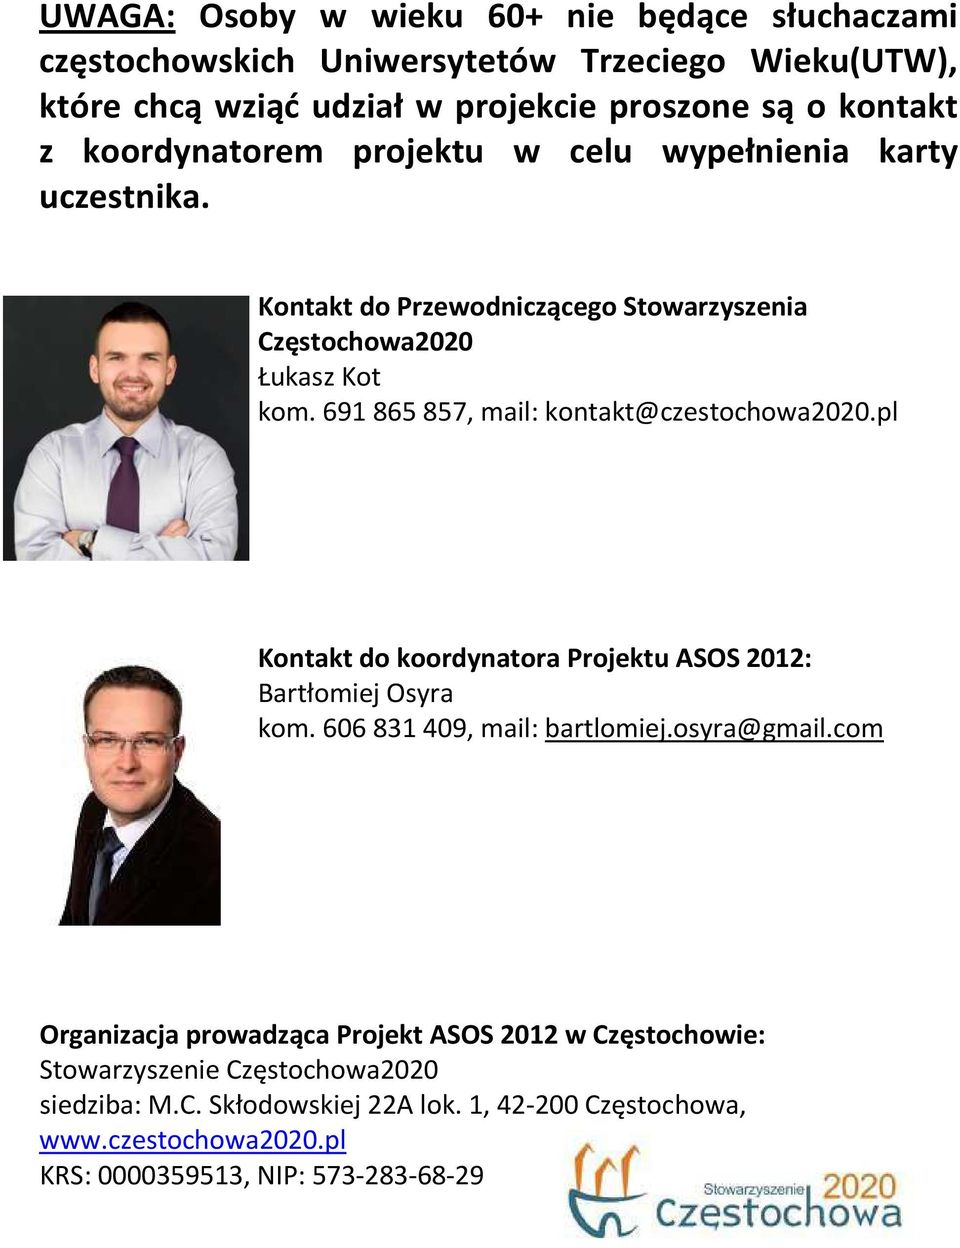 691 865 857, mail: kontakt@czestochowa2020.pl Kontakt do koordynatora Projektu ASOS 2012: Bartłomiej Osyra kom. 606 831 409, mail: bartlomiej.osyra@gmail.